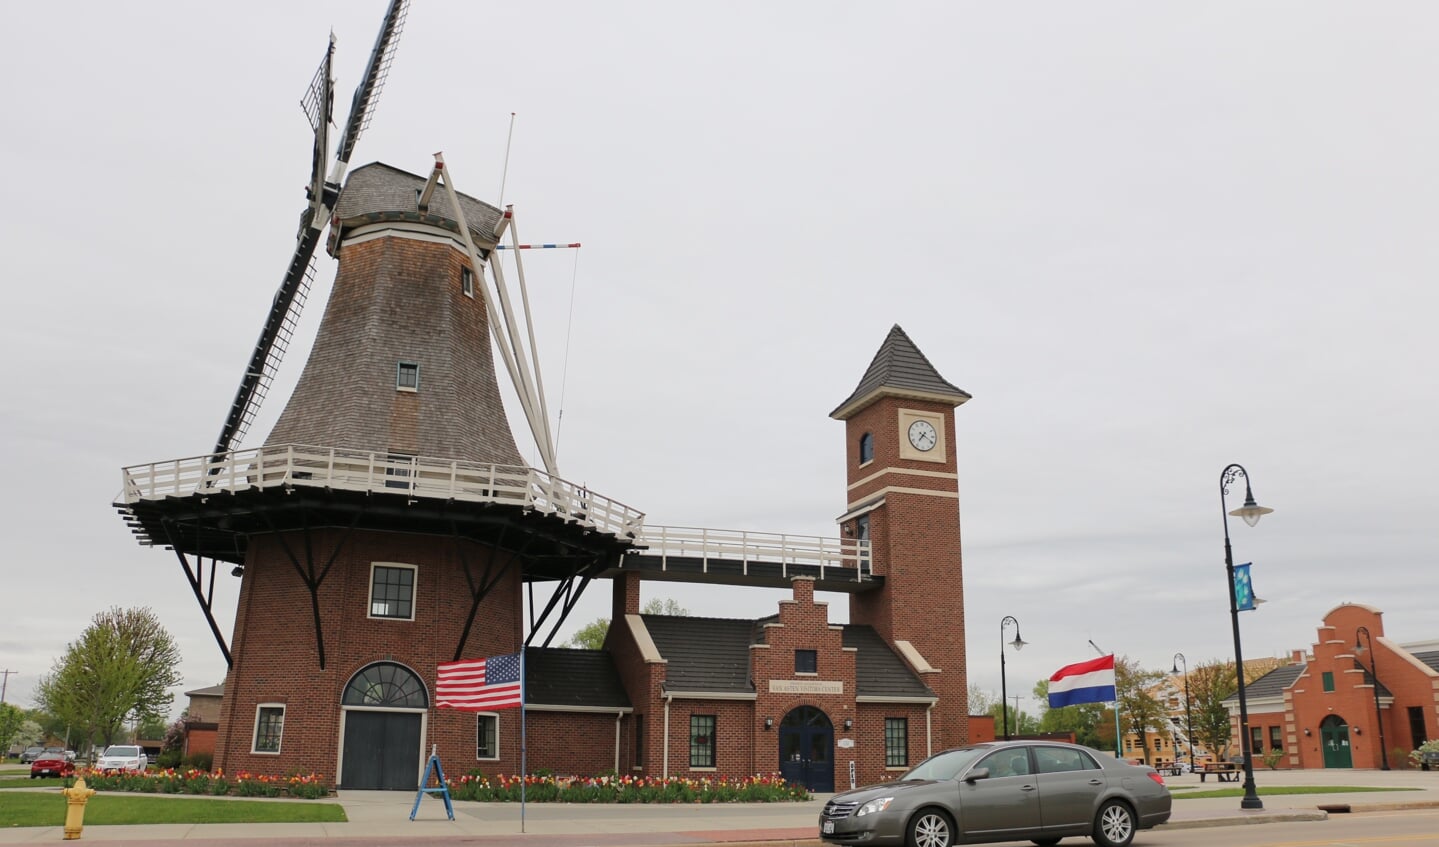 De molen staat als blikvanger midden in het centrum van Little Chute, pal naast het gemeentehuis. Op de stoep een Nederlandse en een Amerikaanse vlag.